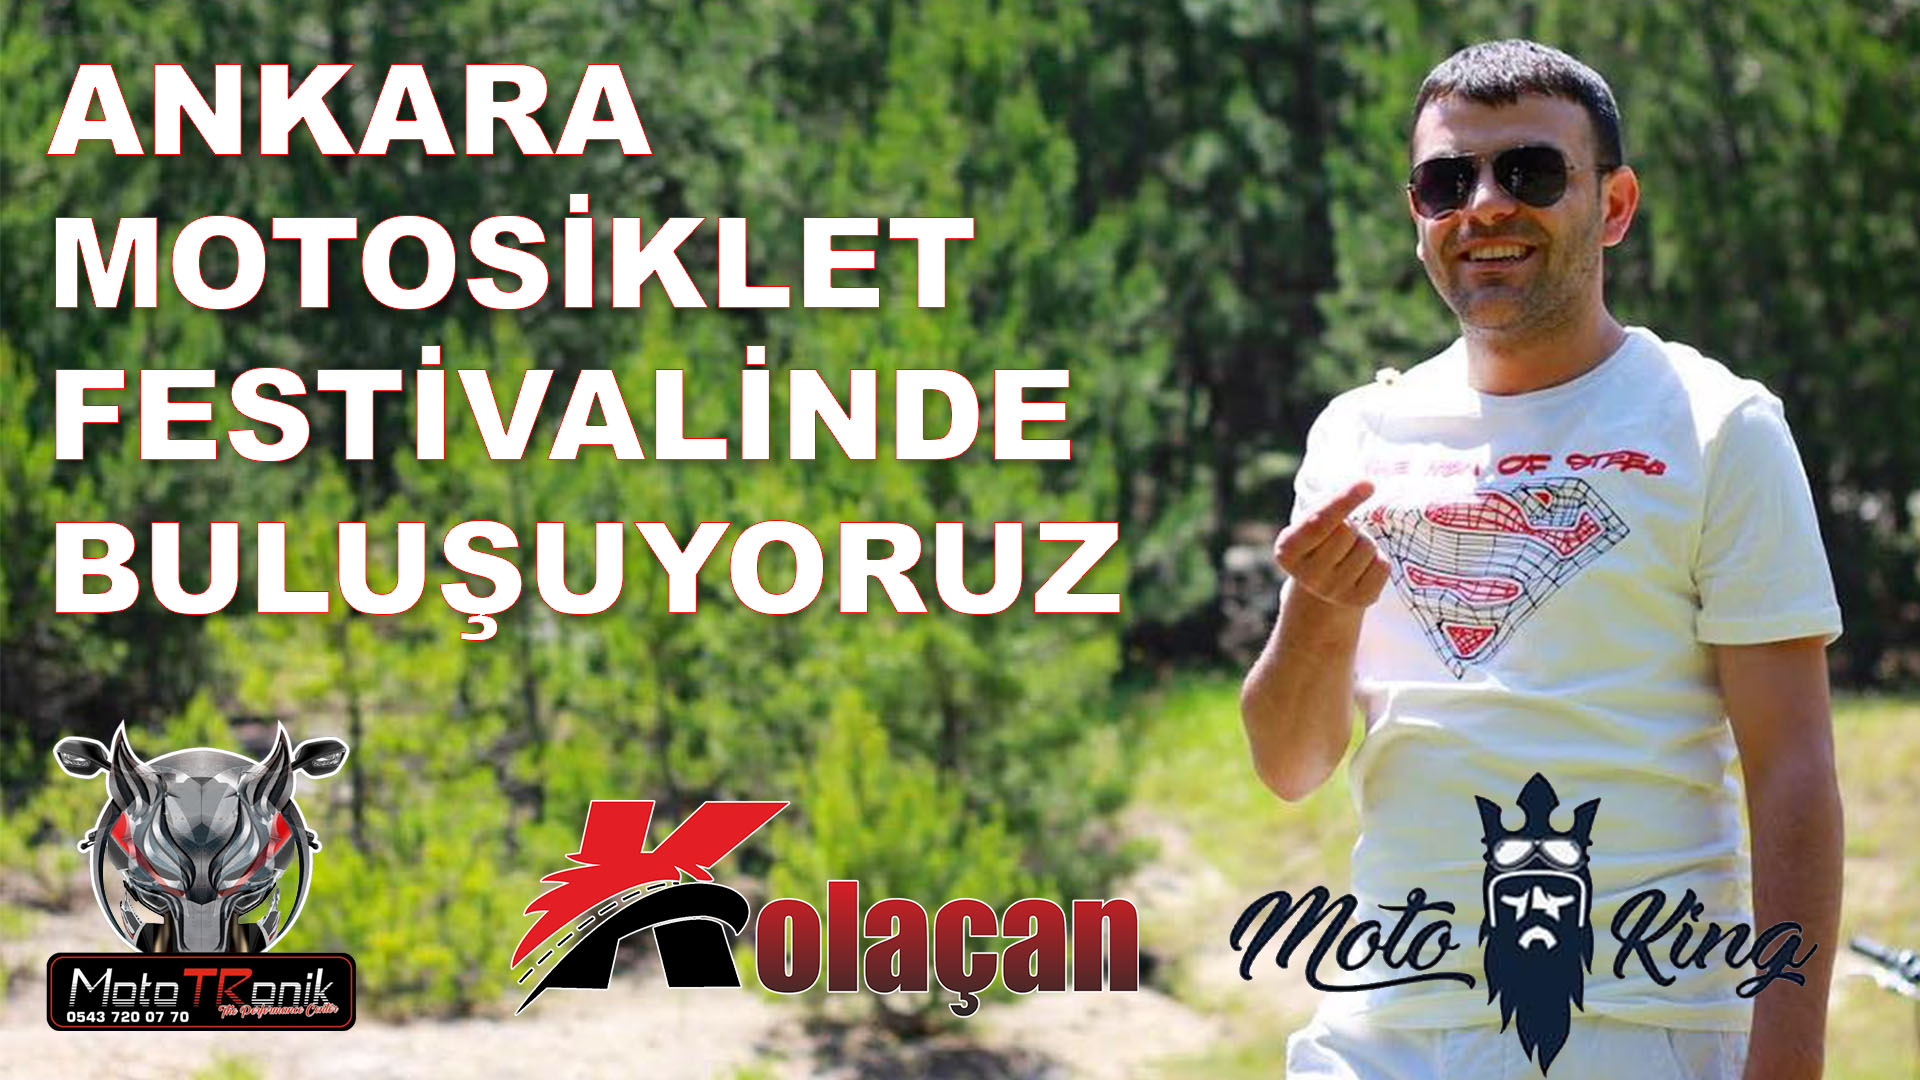 Ankara Motosiklet Festivalinde buluşuyoruz